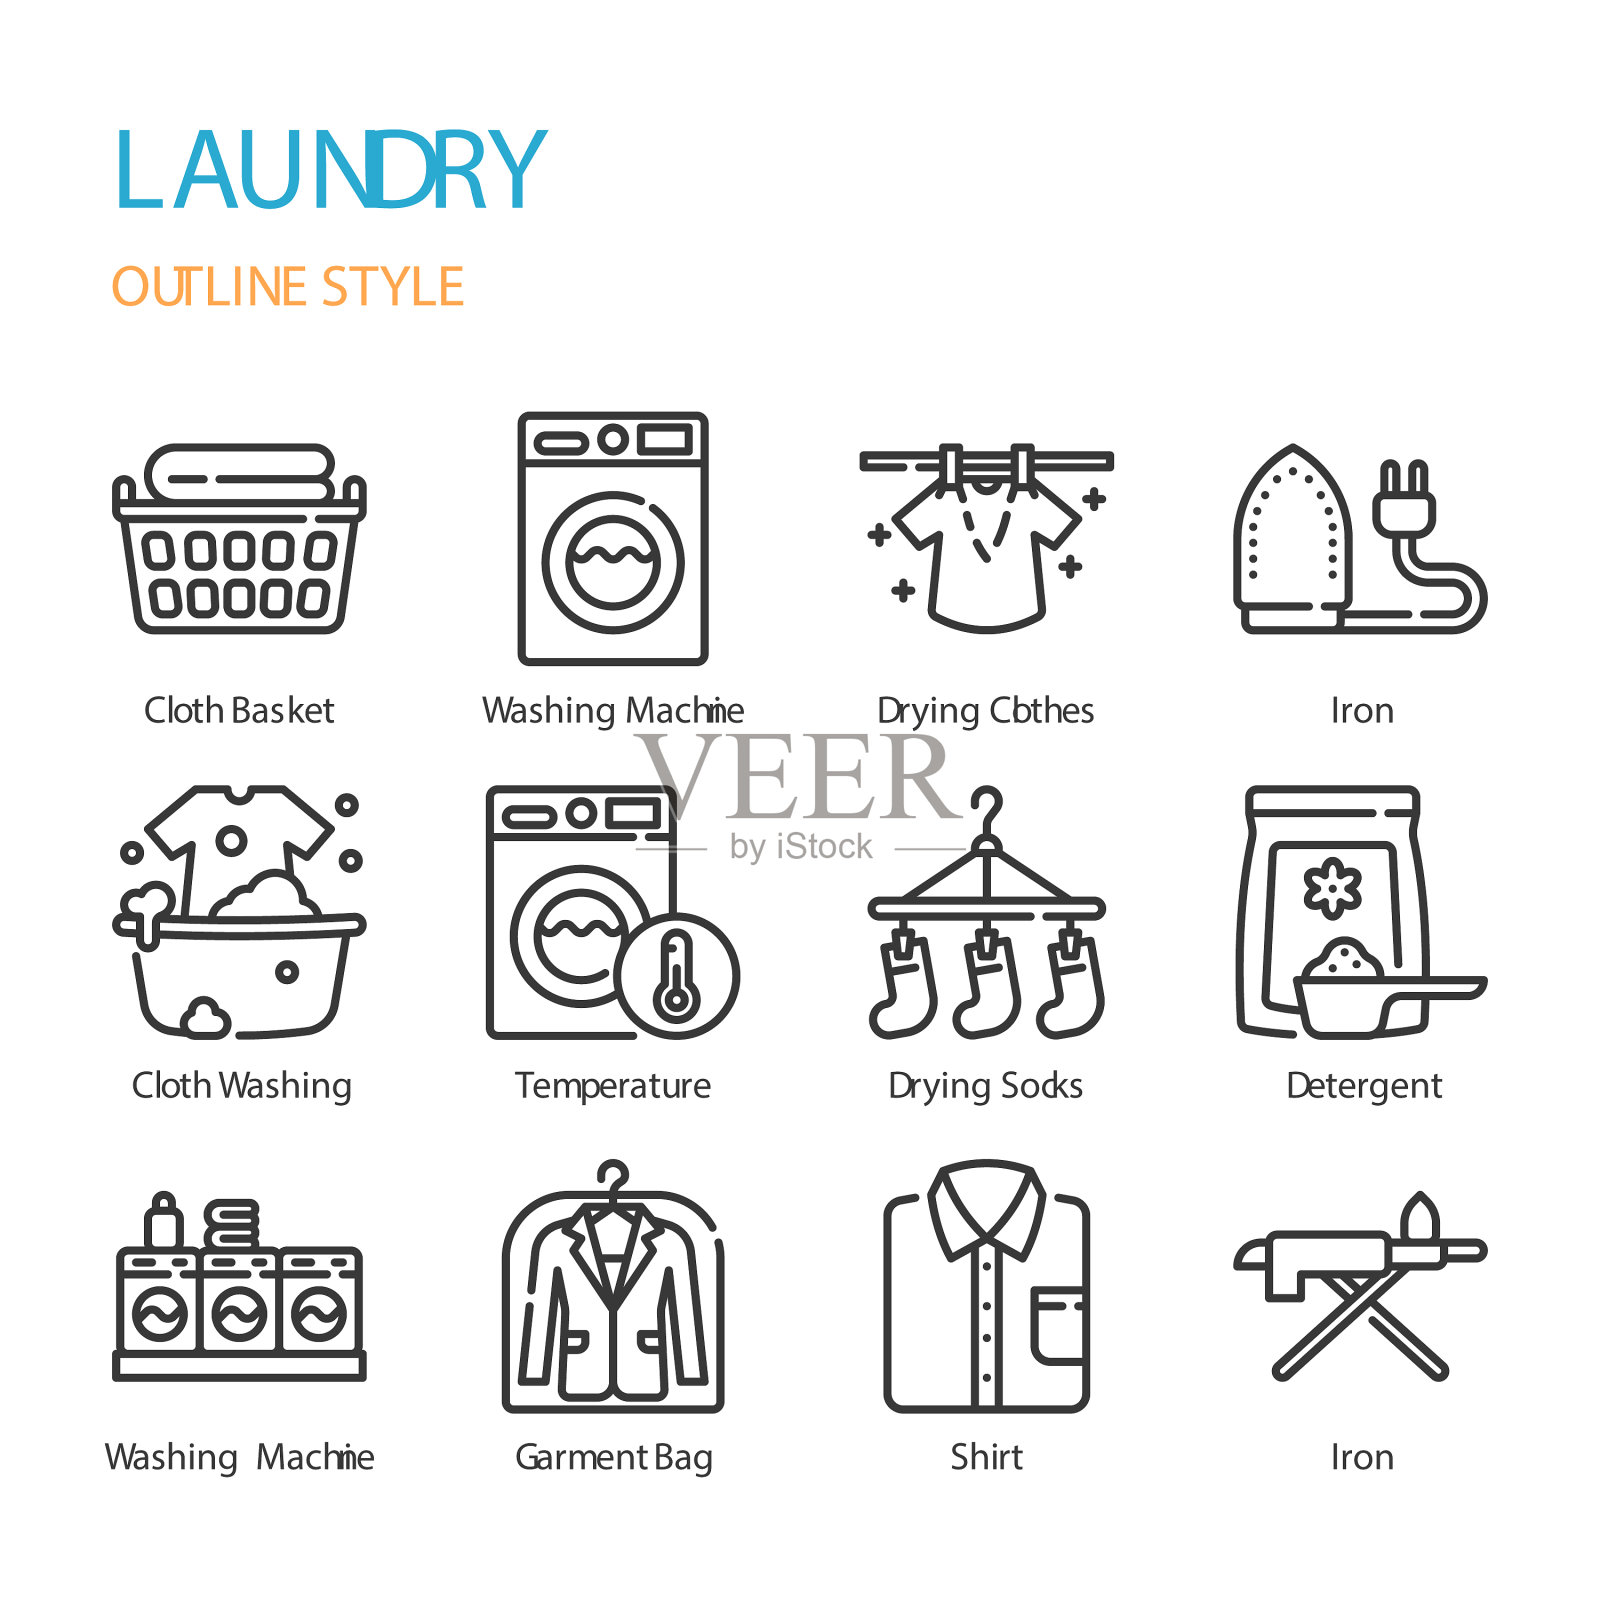 洗衣的轮廓图标和符号集图标素材